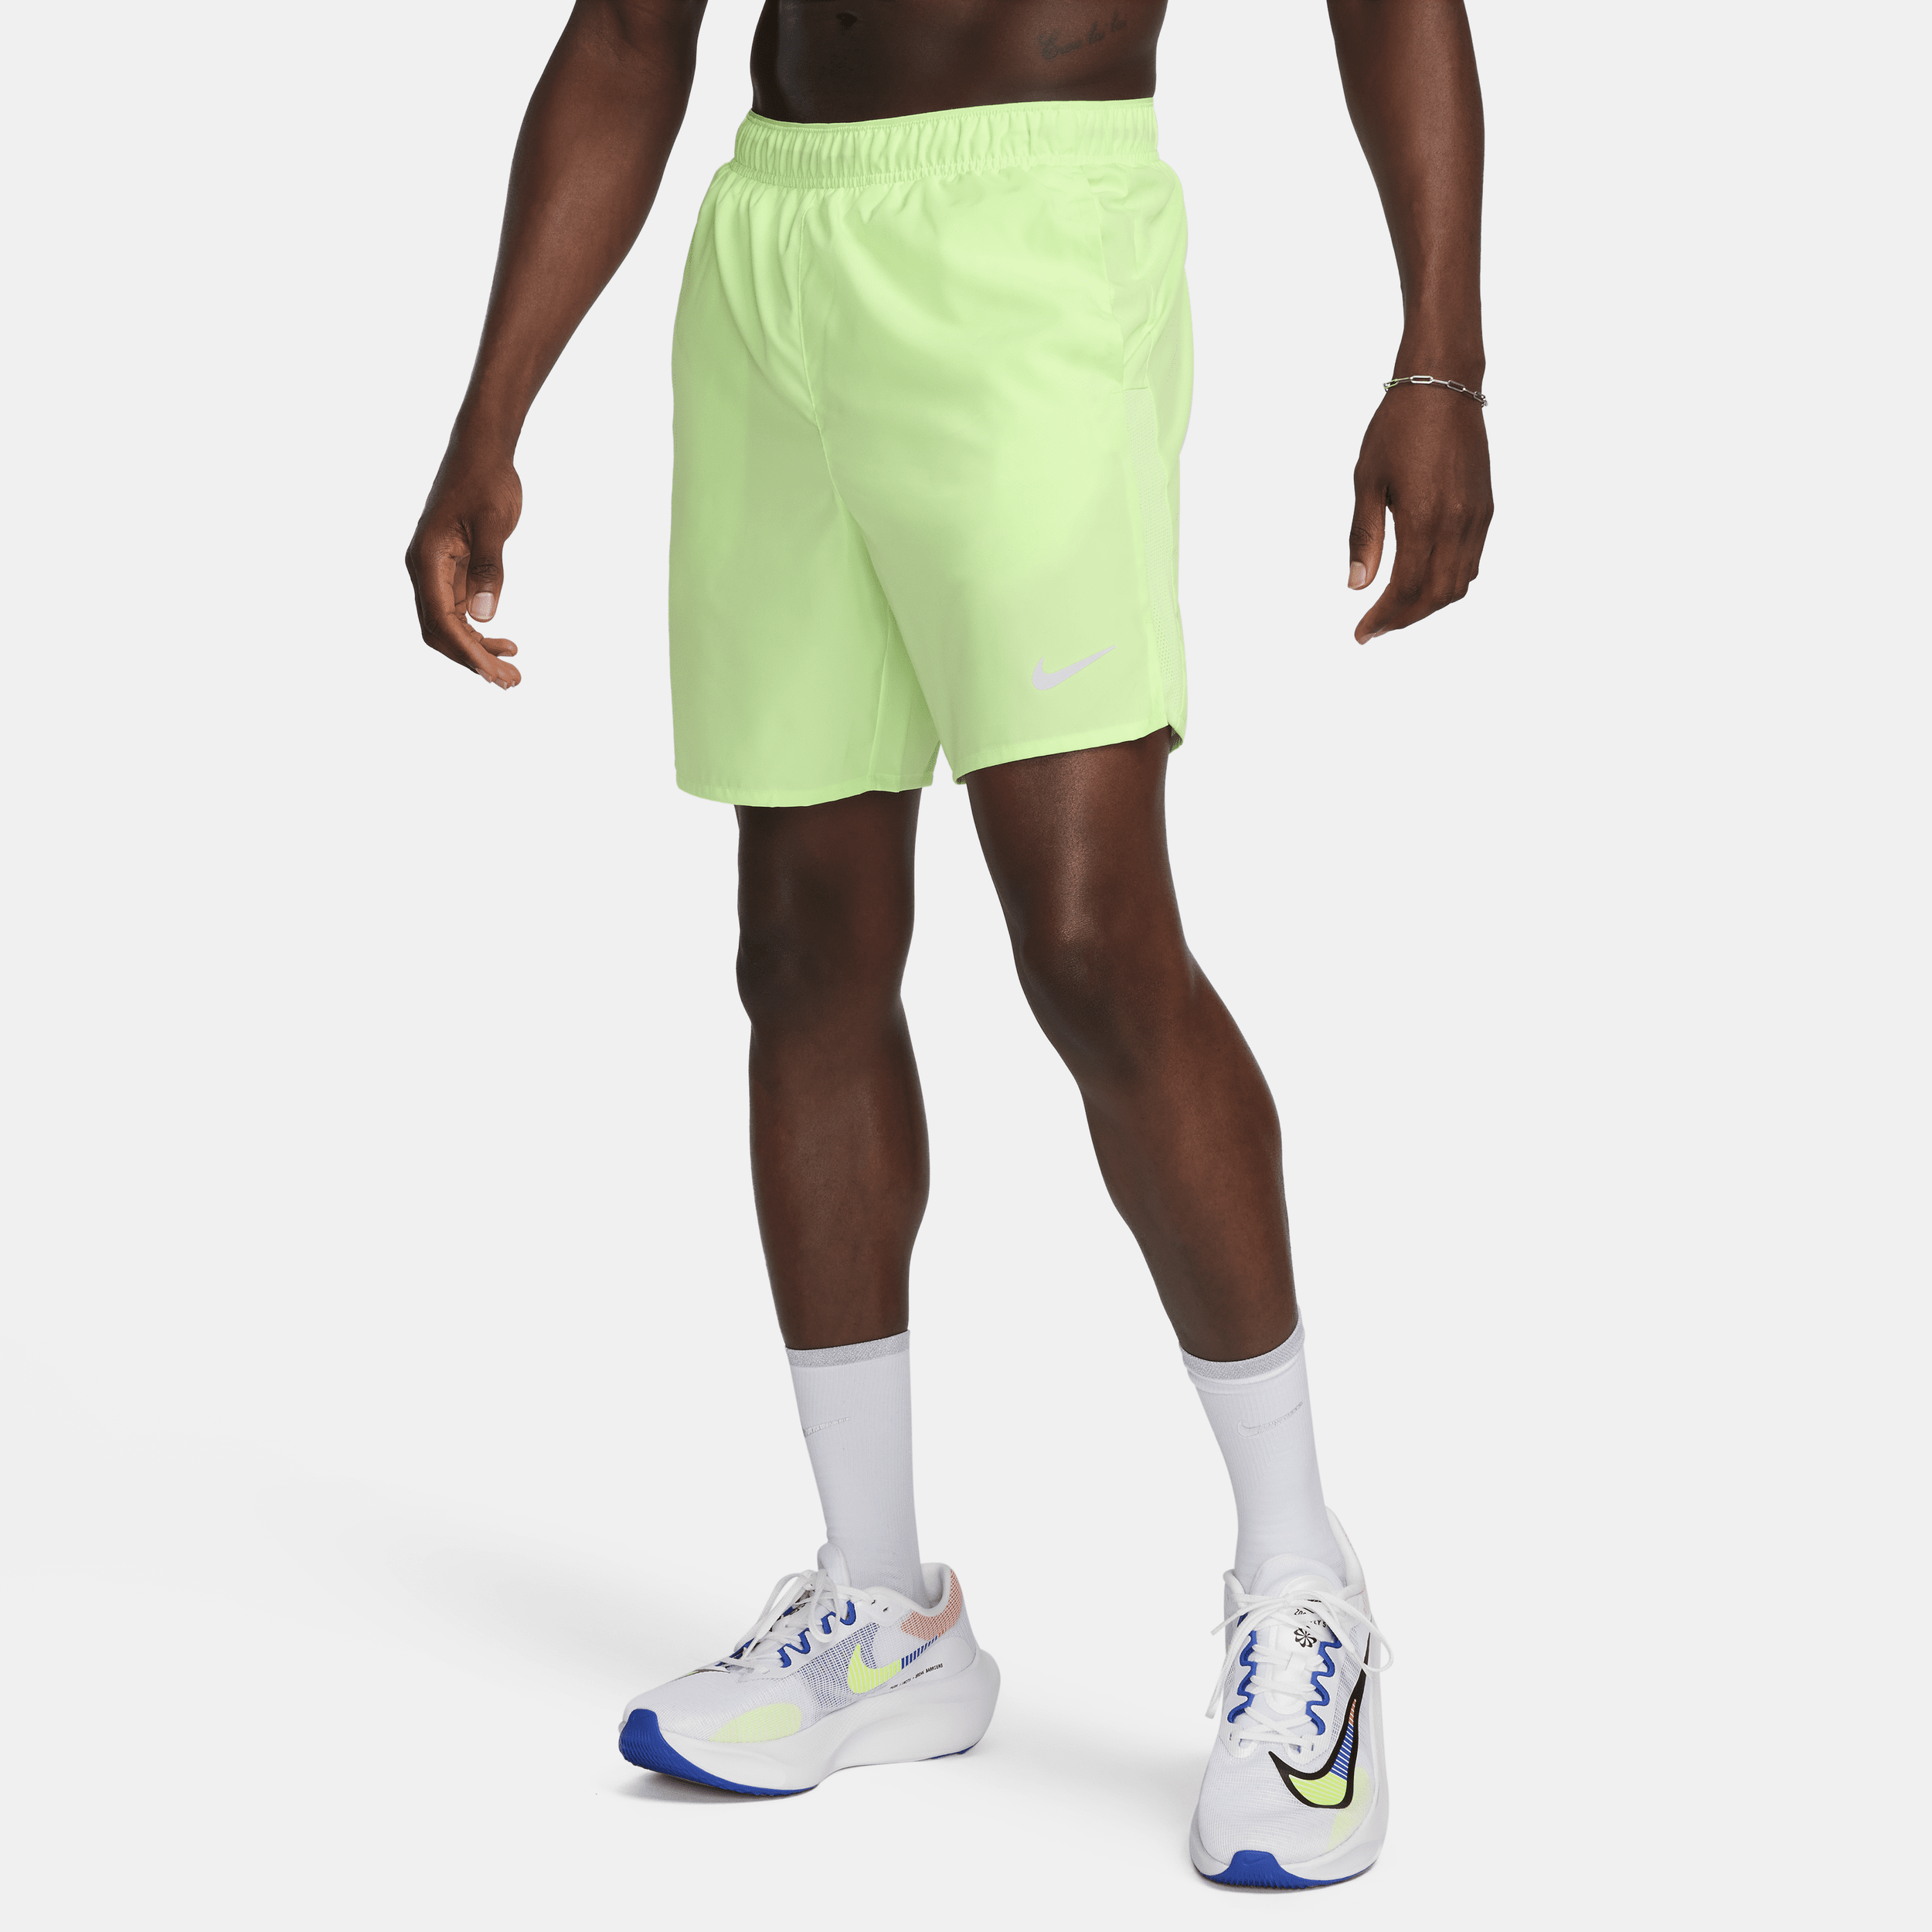 Nike Challenger Dri-FIT hardloopshorts met binnenbroek voor heren (18 cm) - Groen